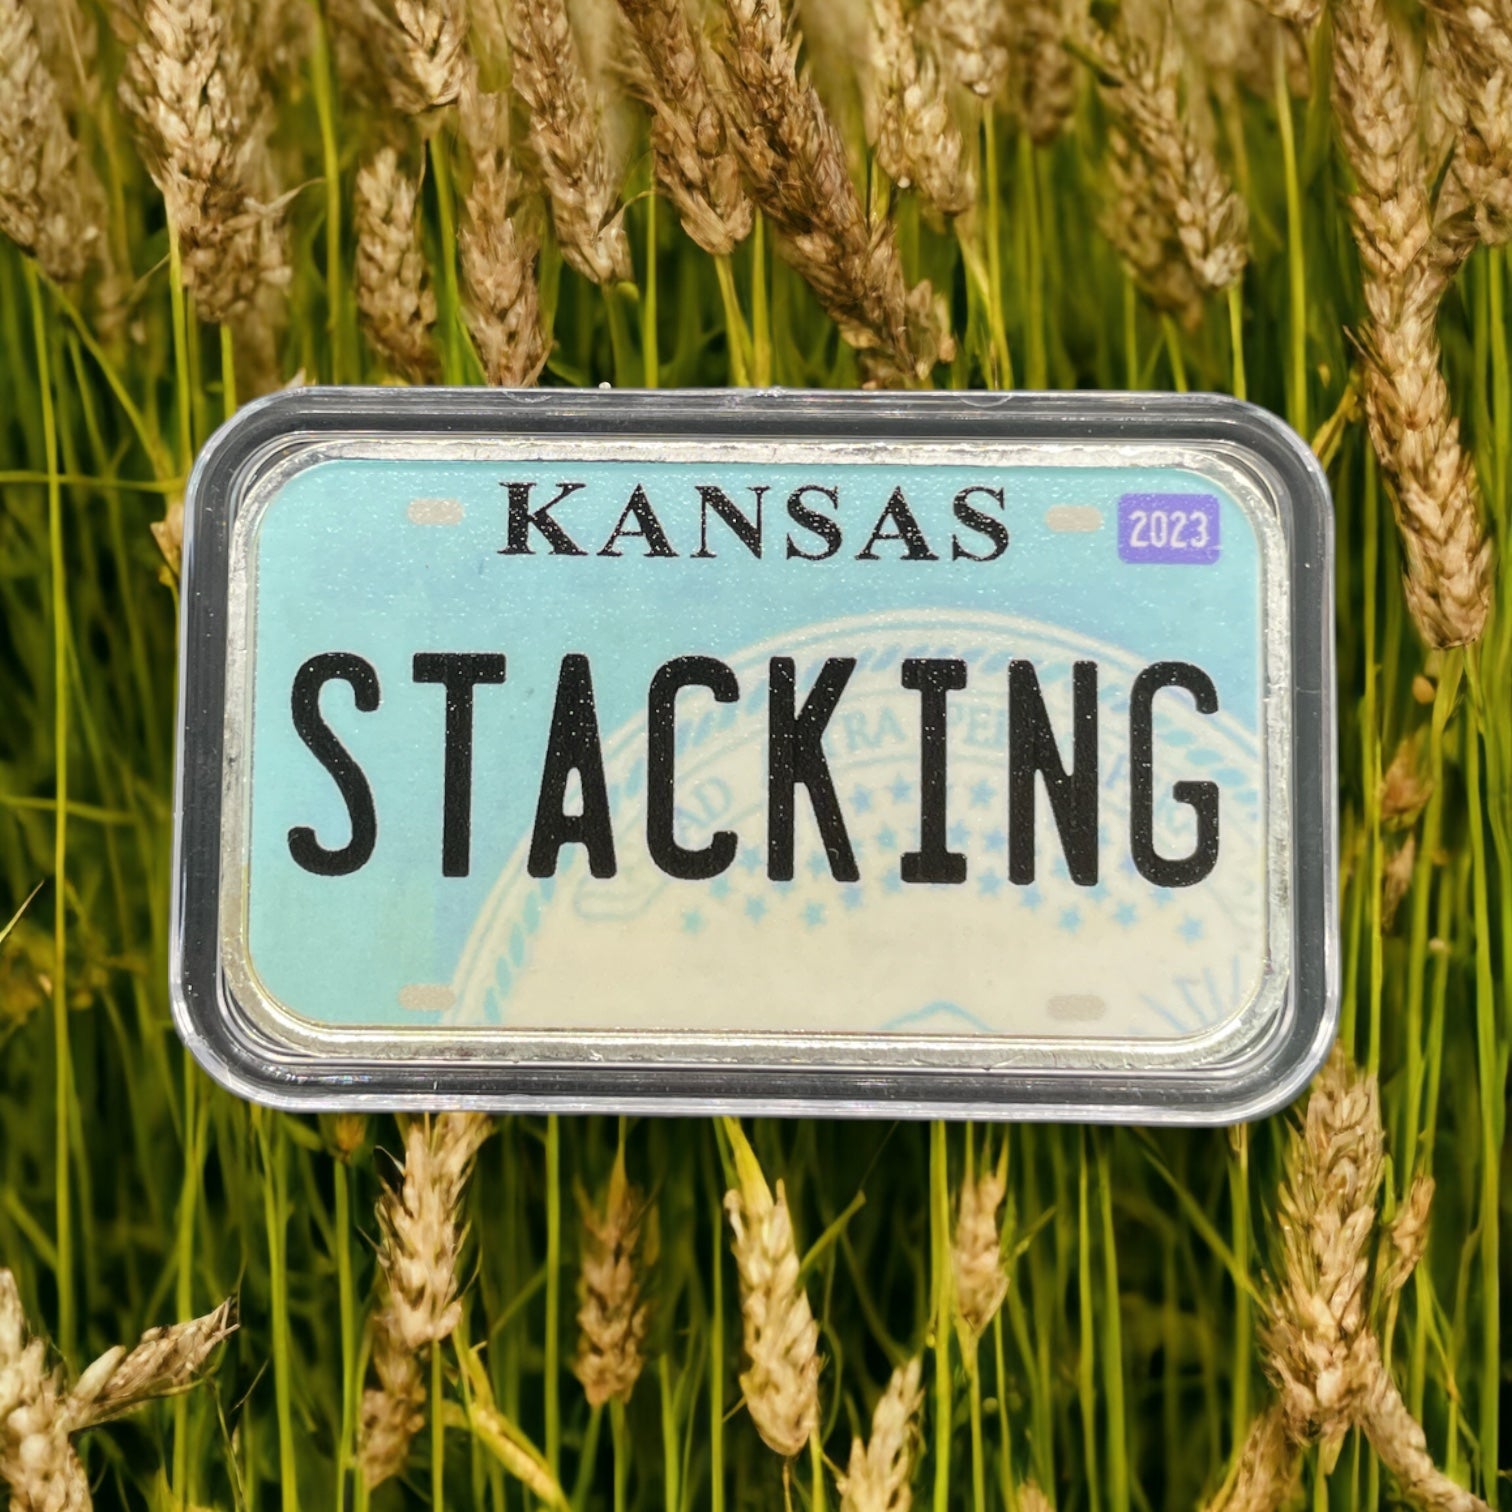 STACKING Kansas